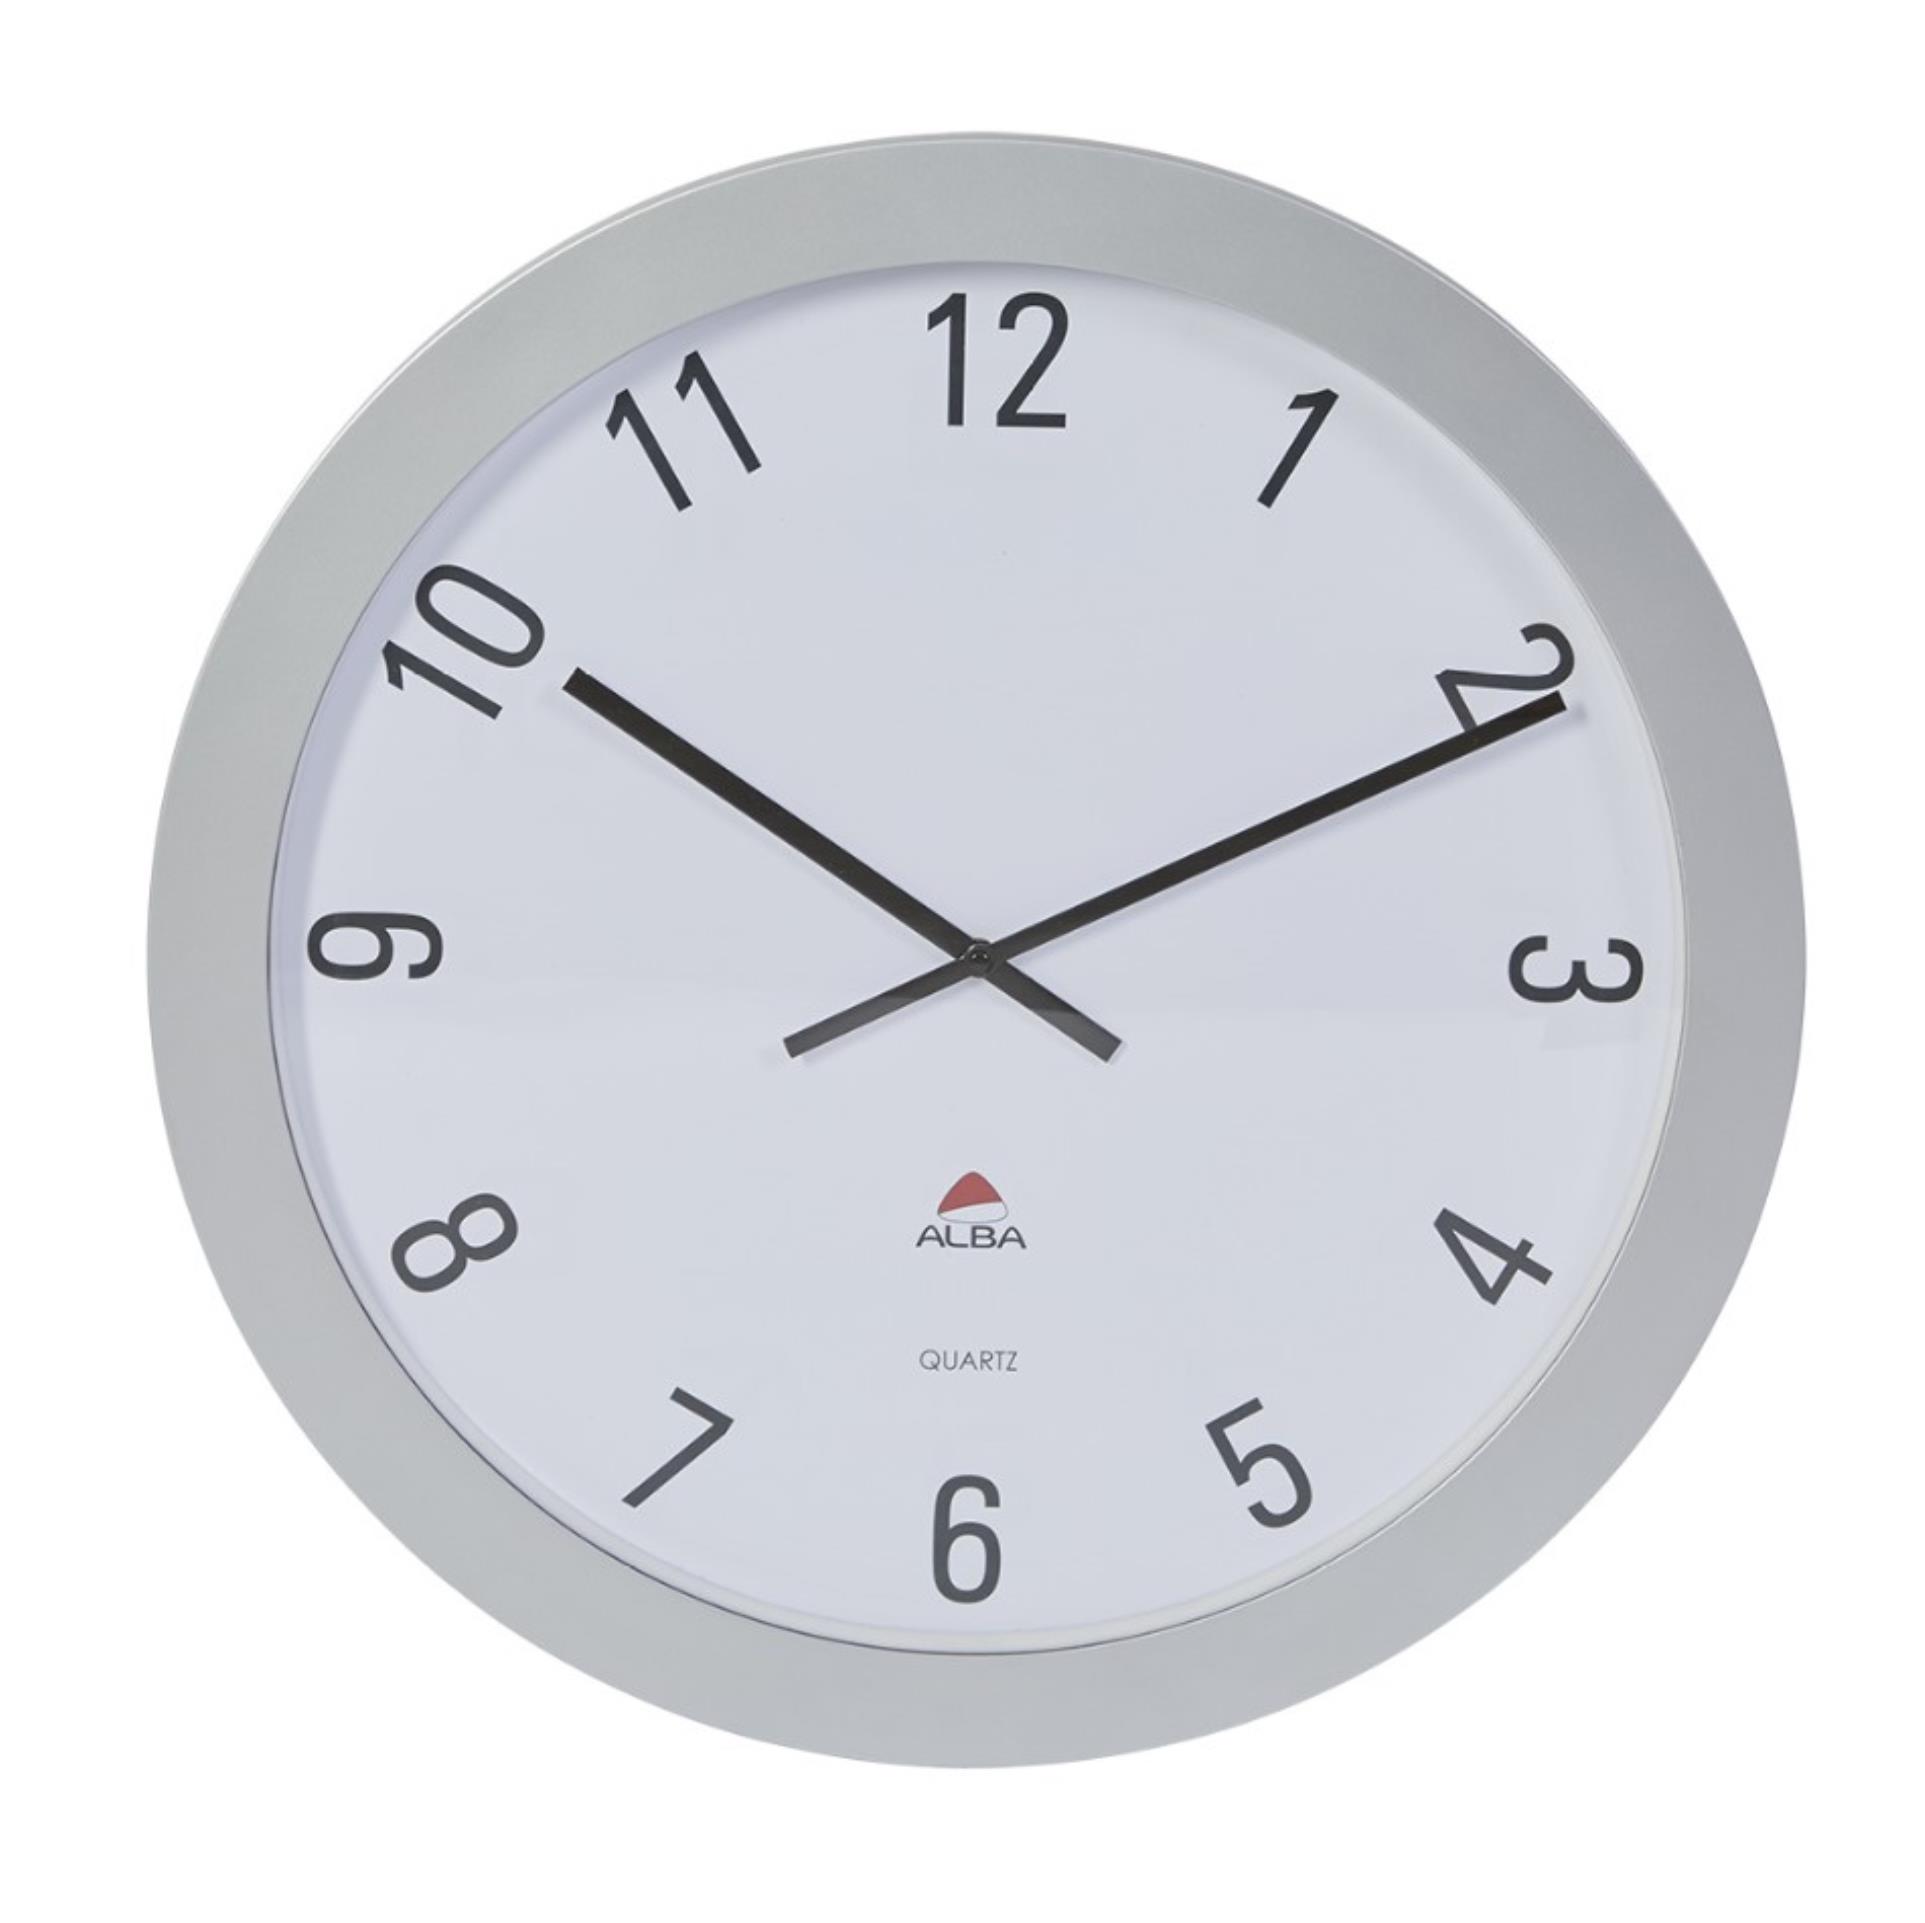 Alba France Nástěnné hodiny GIANT - průměr 60 cm, šedé/bílé